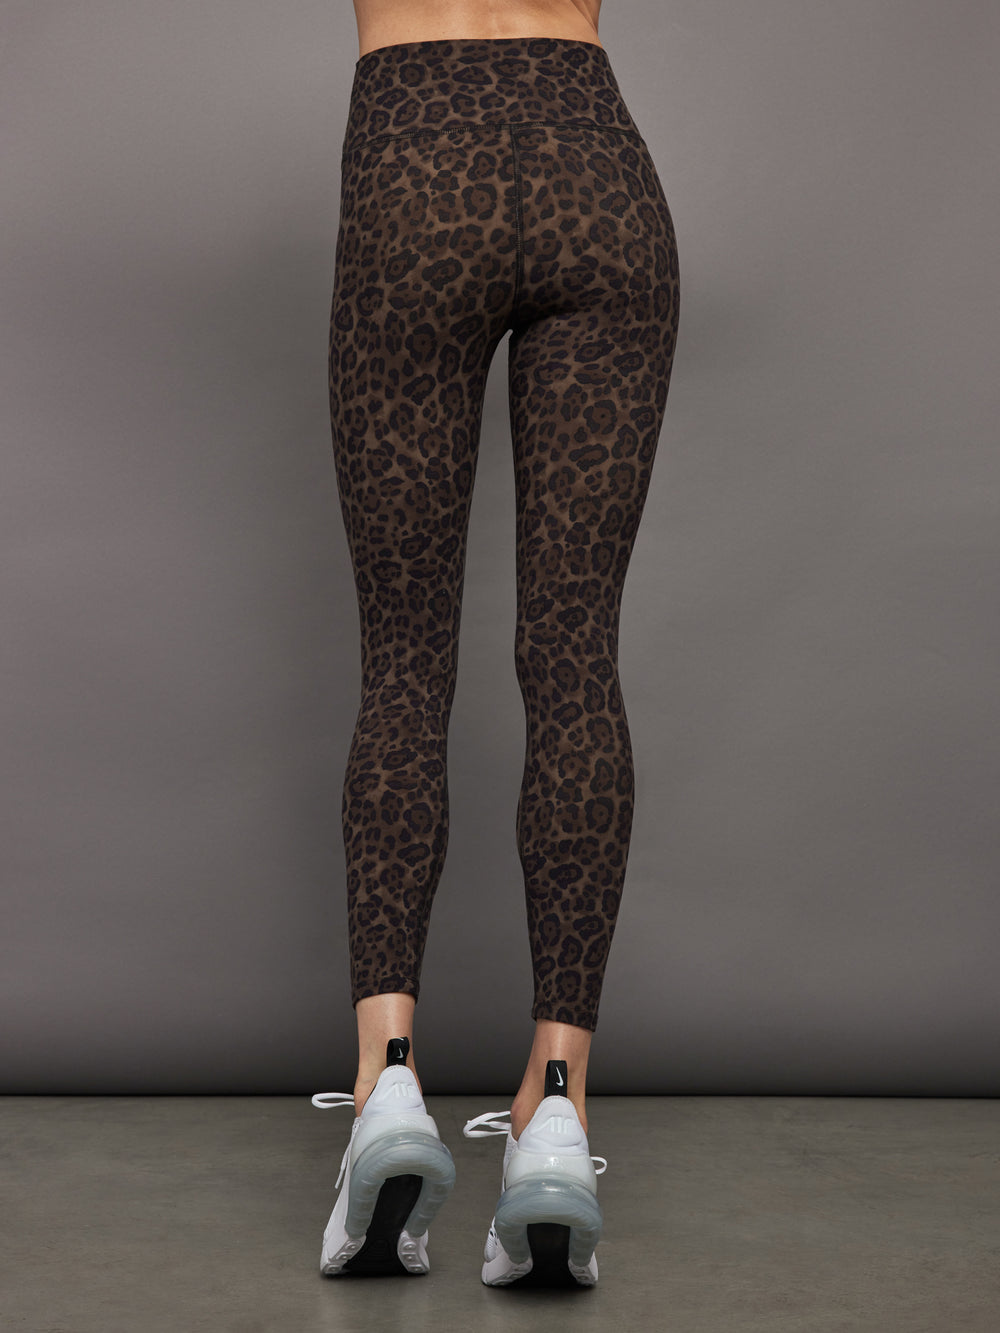 Leopard Print Leggings, Animal Print Leggings